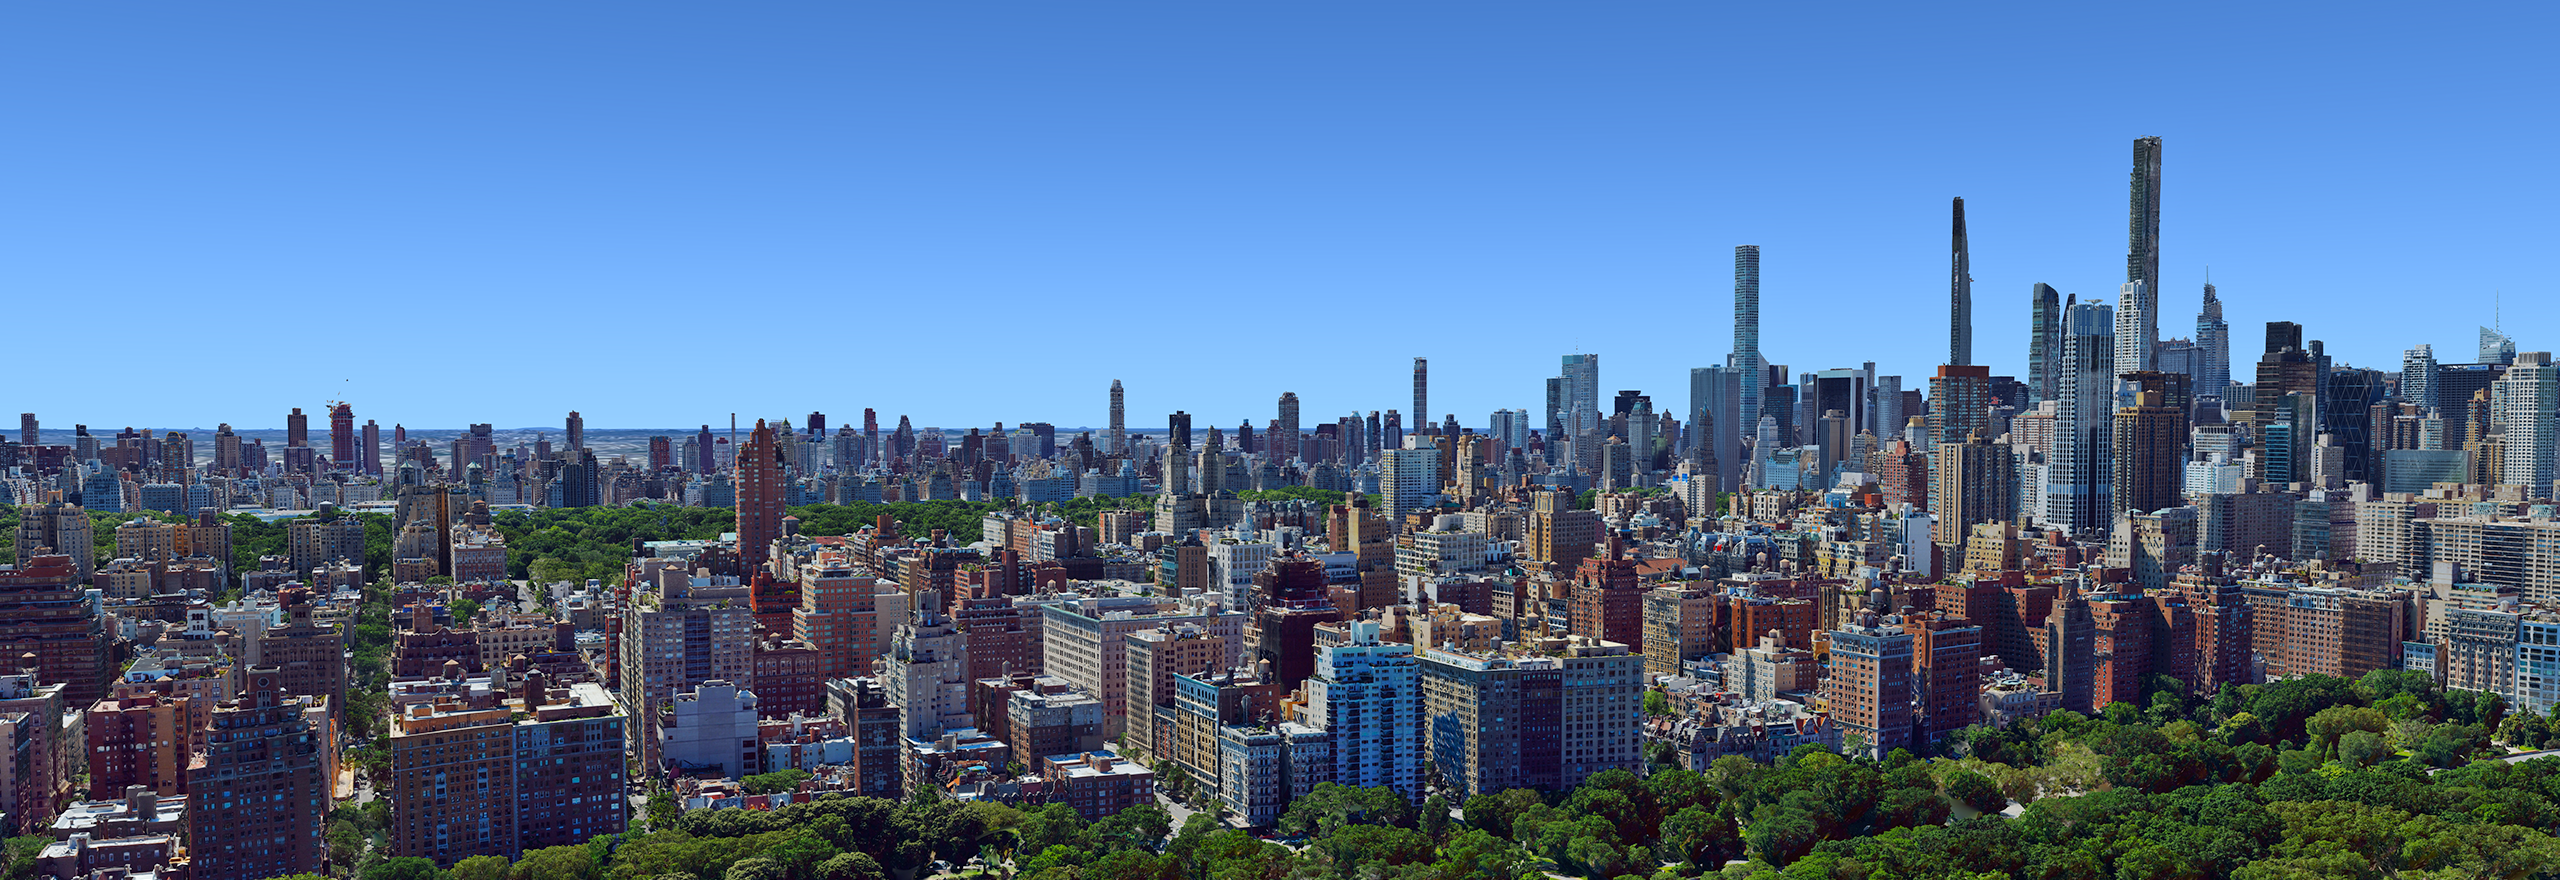 Modello 3D a maglia aerea della città di New York